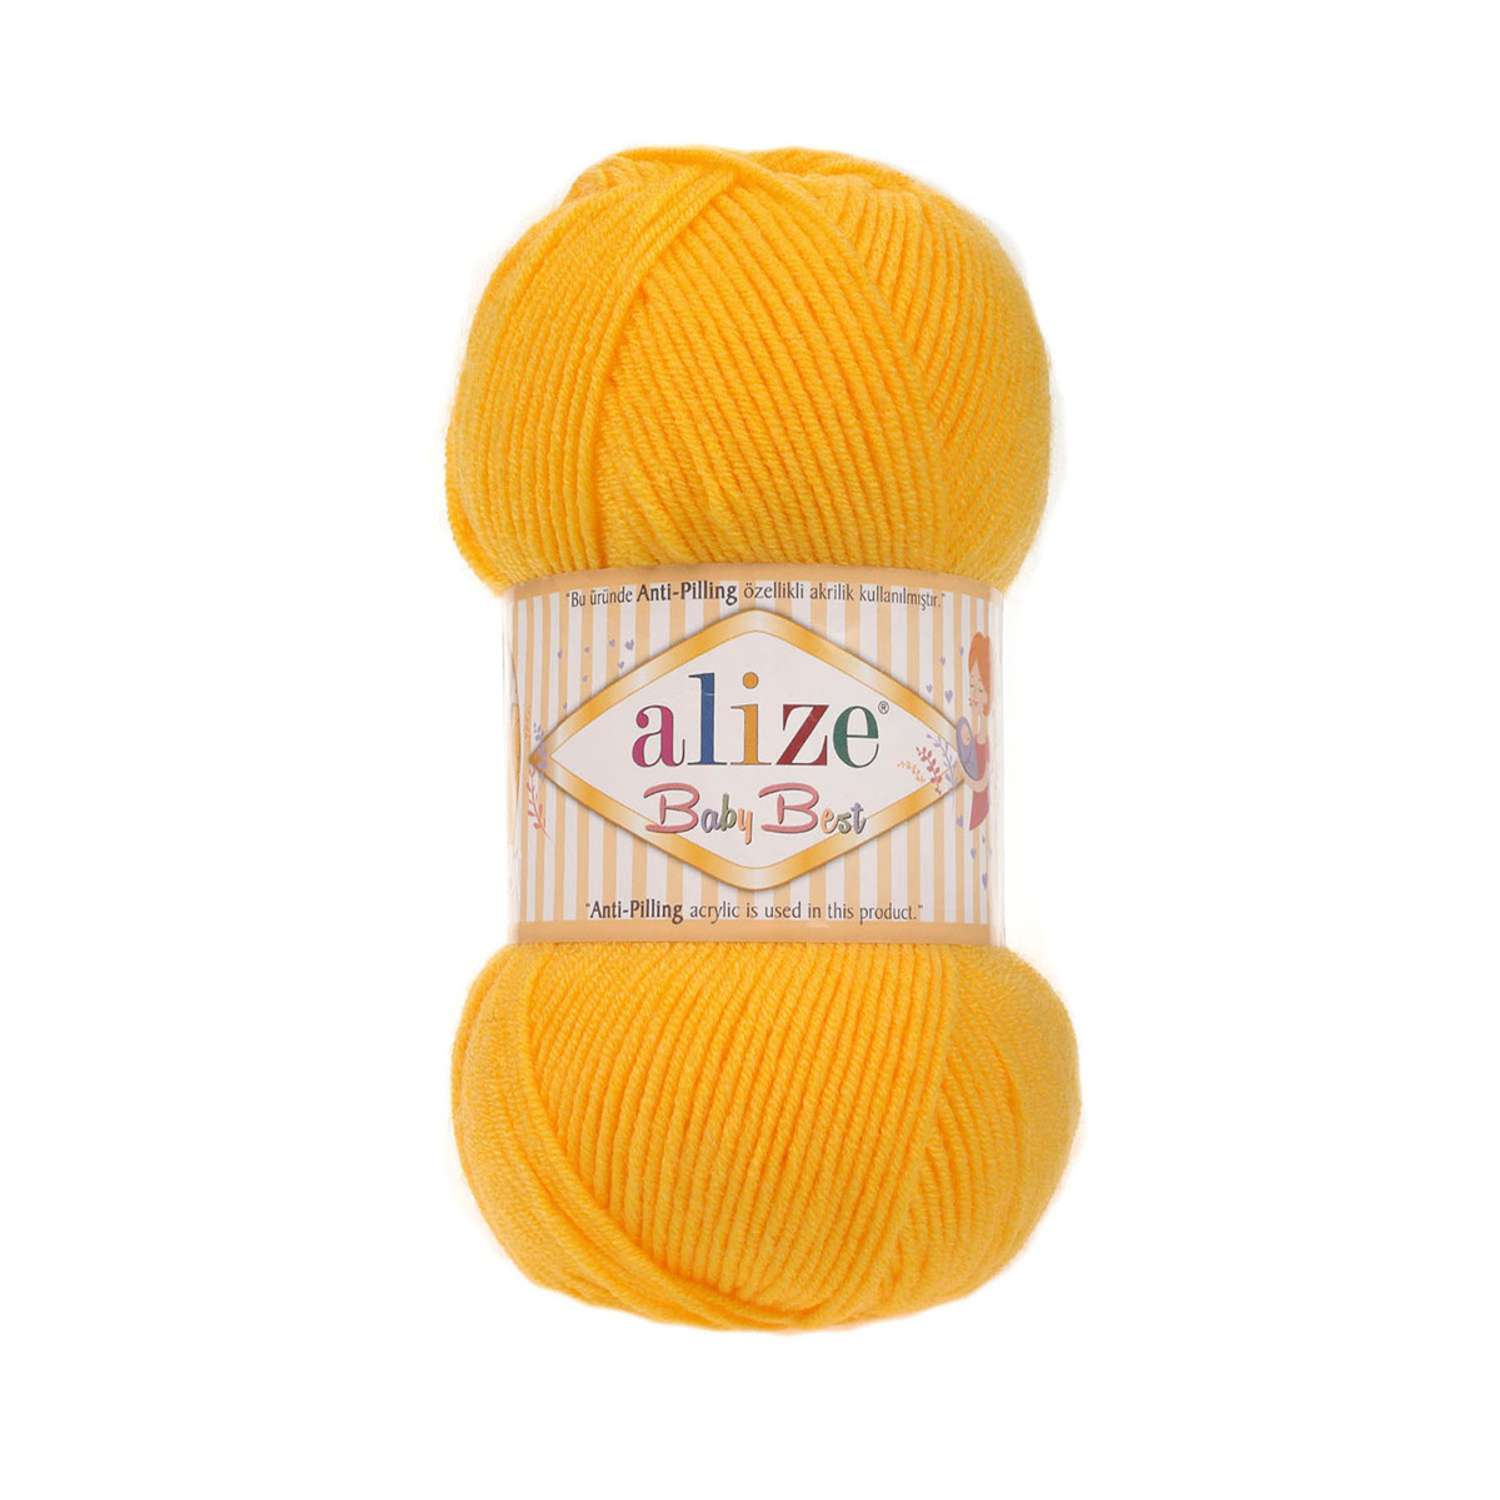 Пряжа для вязания Alize baby best бамбук акрил с эффектом антипиллинг 100 г 240 м 216 темно желтый 5 мотков - фото 5